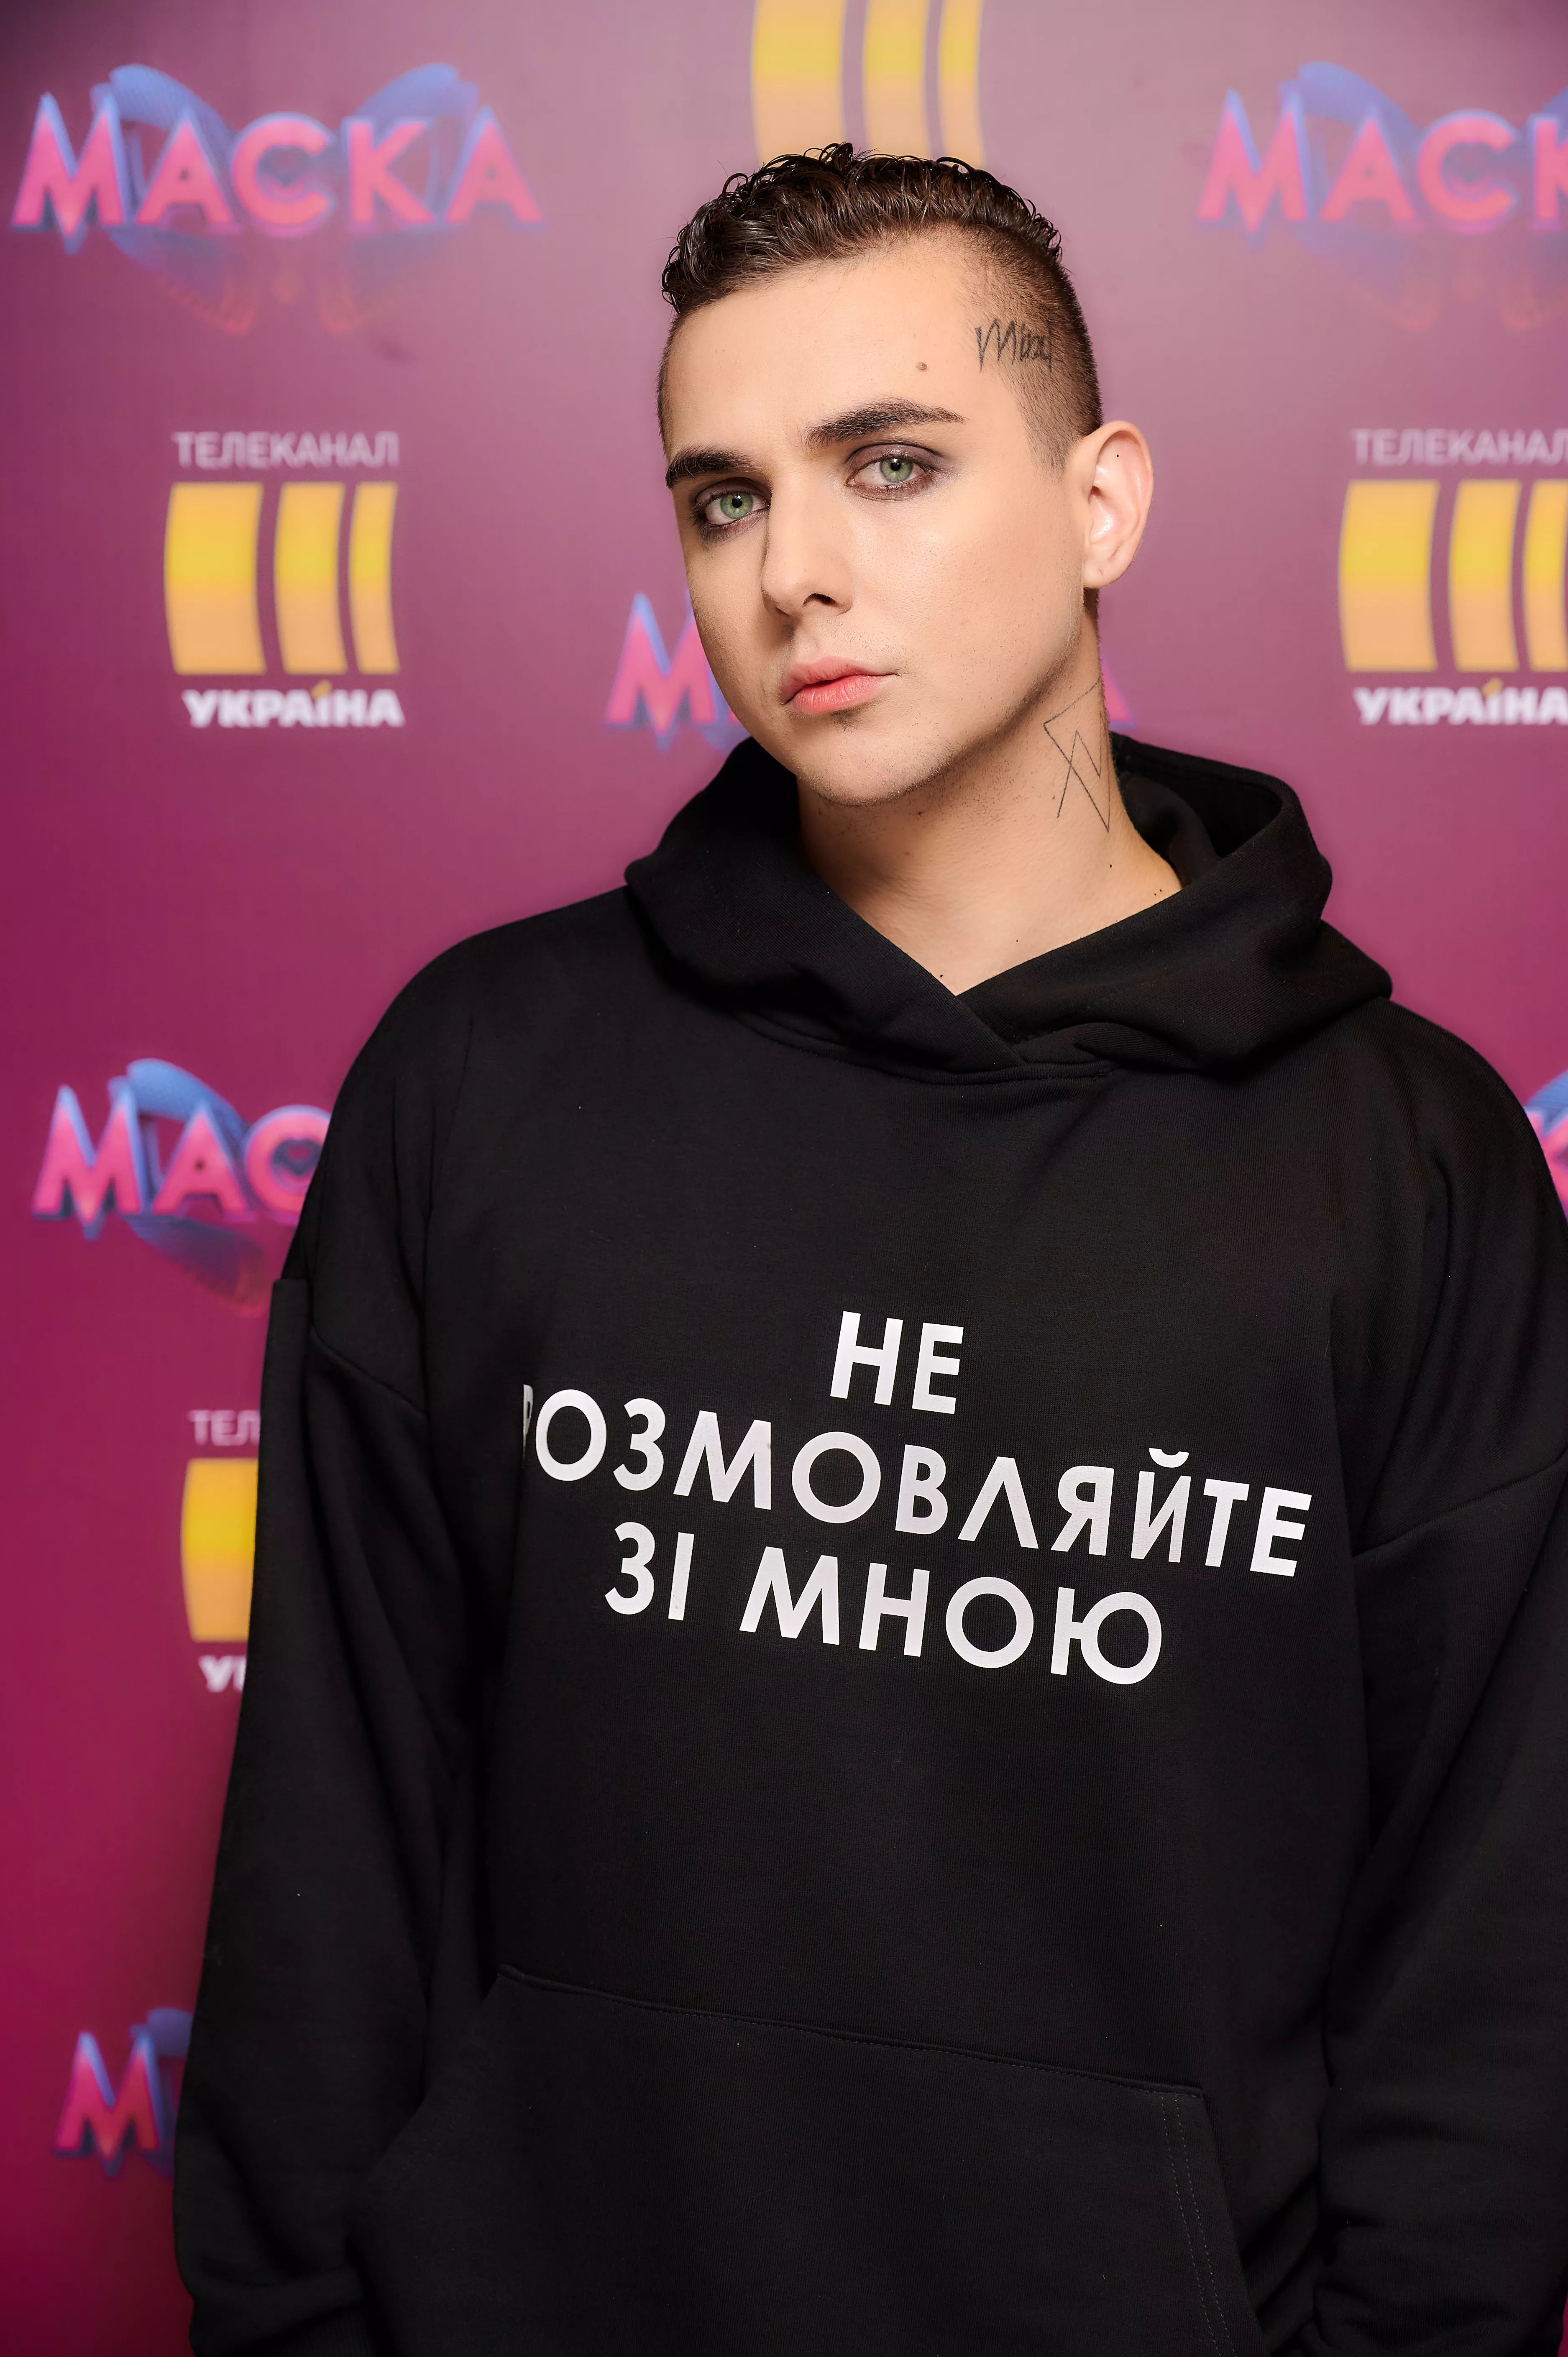 MELOVIN стал победителем второго сезона шоу "Маска"